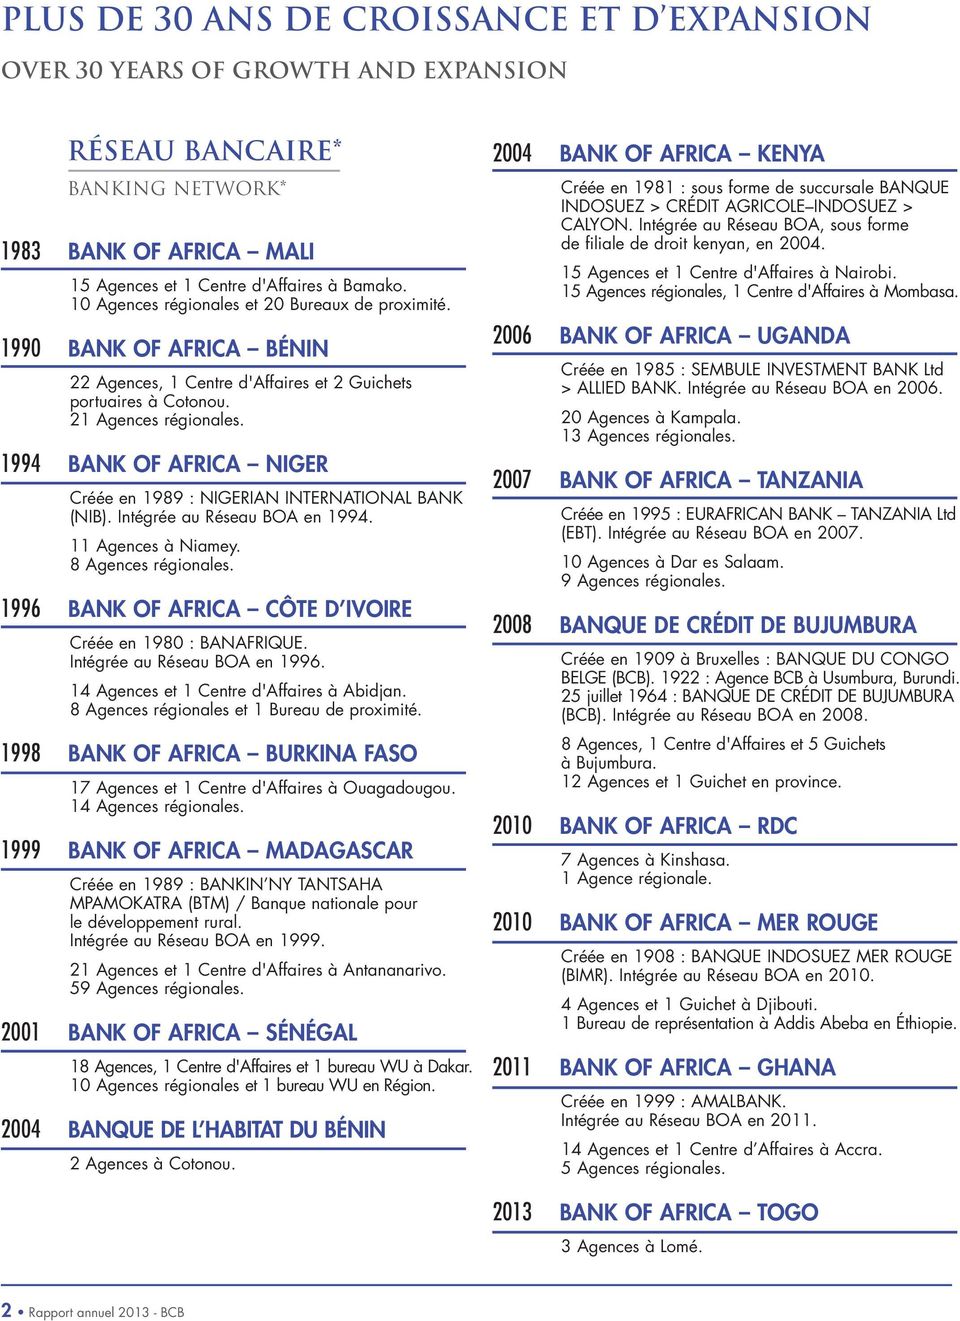 1994 BANK OF AFRICA NIGER Créée en 1989 : NIGERIAN INTERNATIONAL BANK (NIB). Intégrée au Réseau BOA en 1994. 11 Agences à Niamey. 8 Agences régionales.